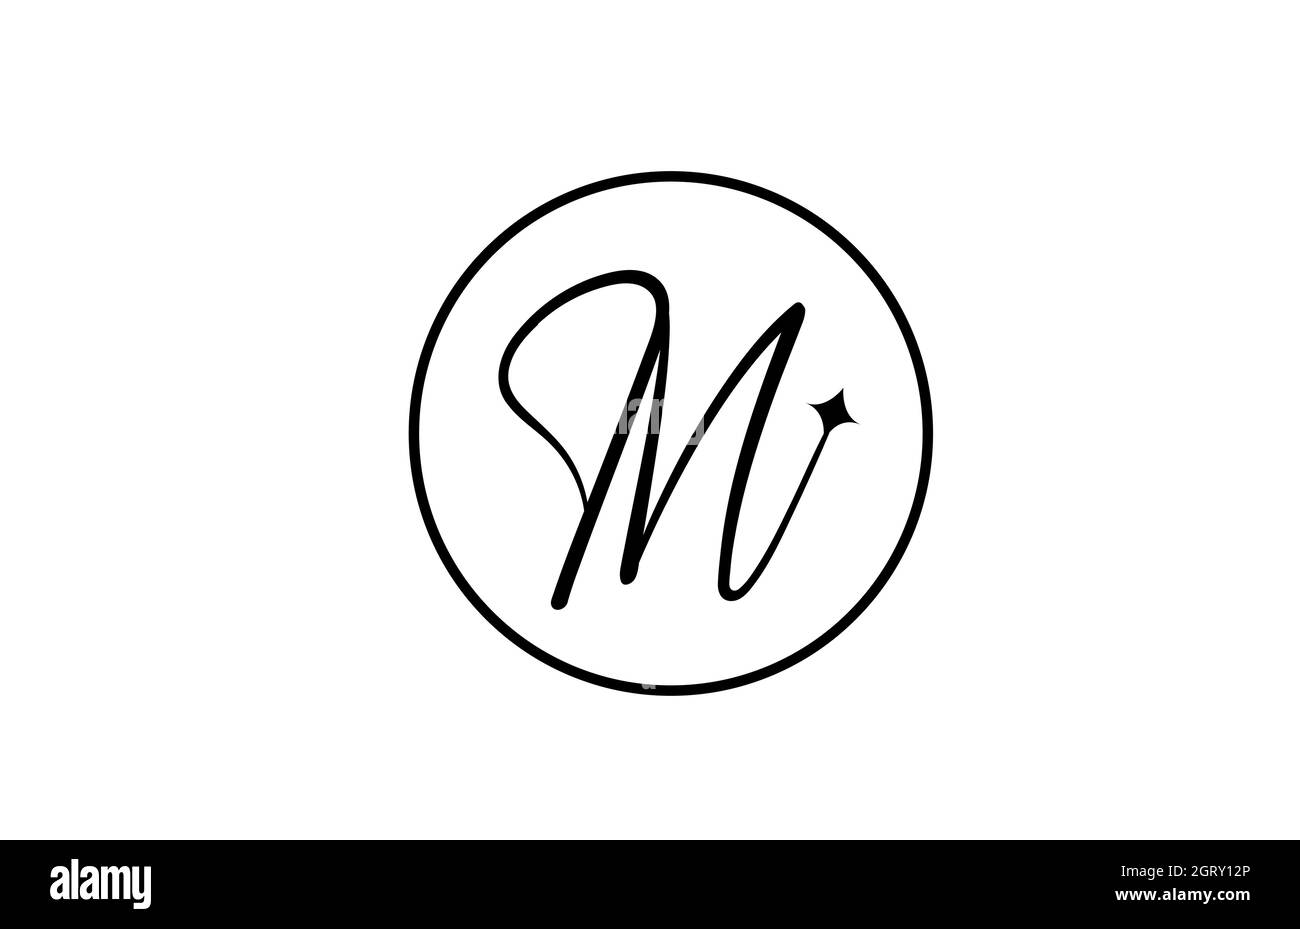 M Alphabet Buchstaben Logo für Business mit Stern und Kreis. Schlichter eleganter Schriftzug für Unternehmen. Corporate Identity Branding Icon Design in weiß und schwarz Stock Vektor